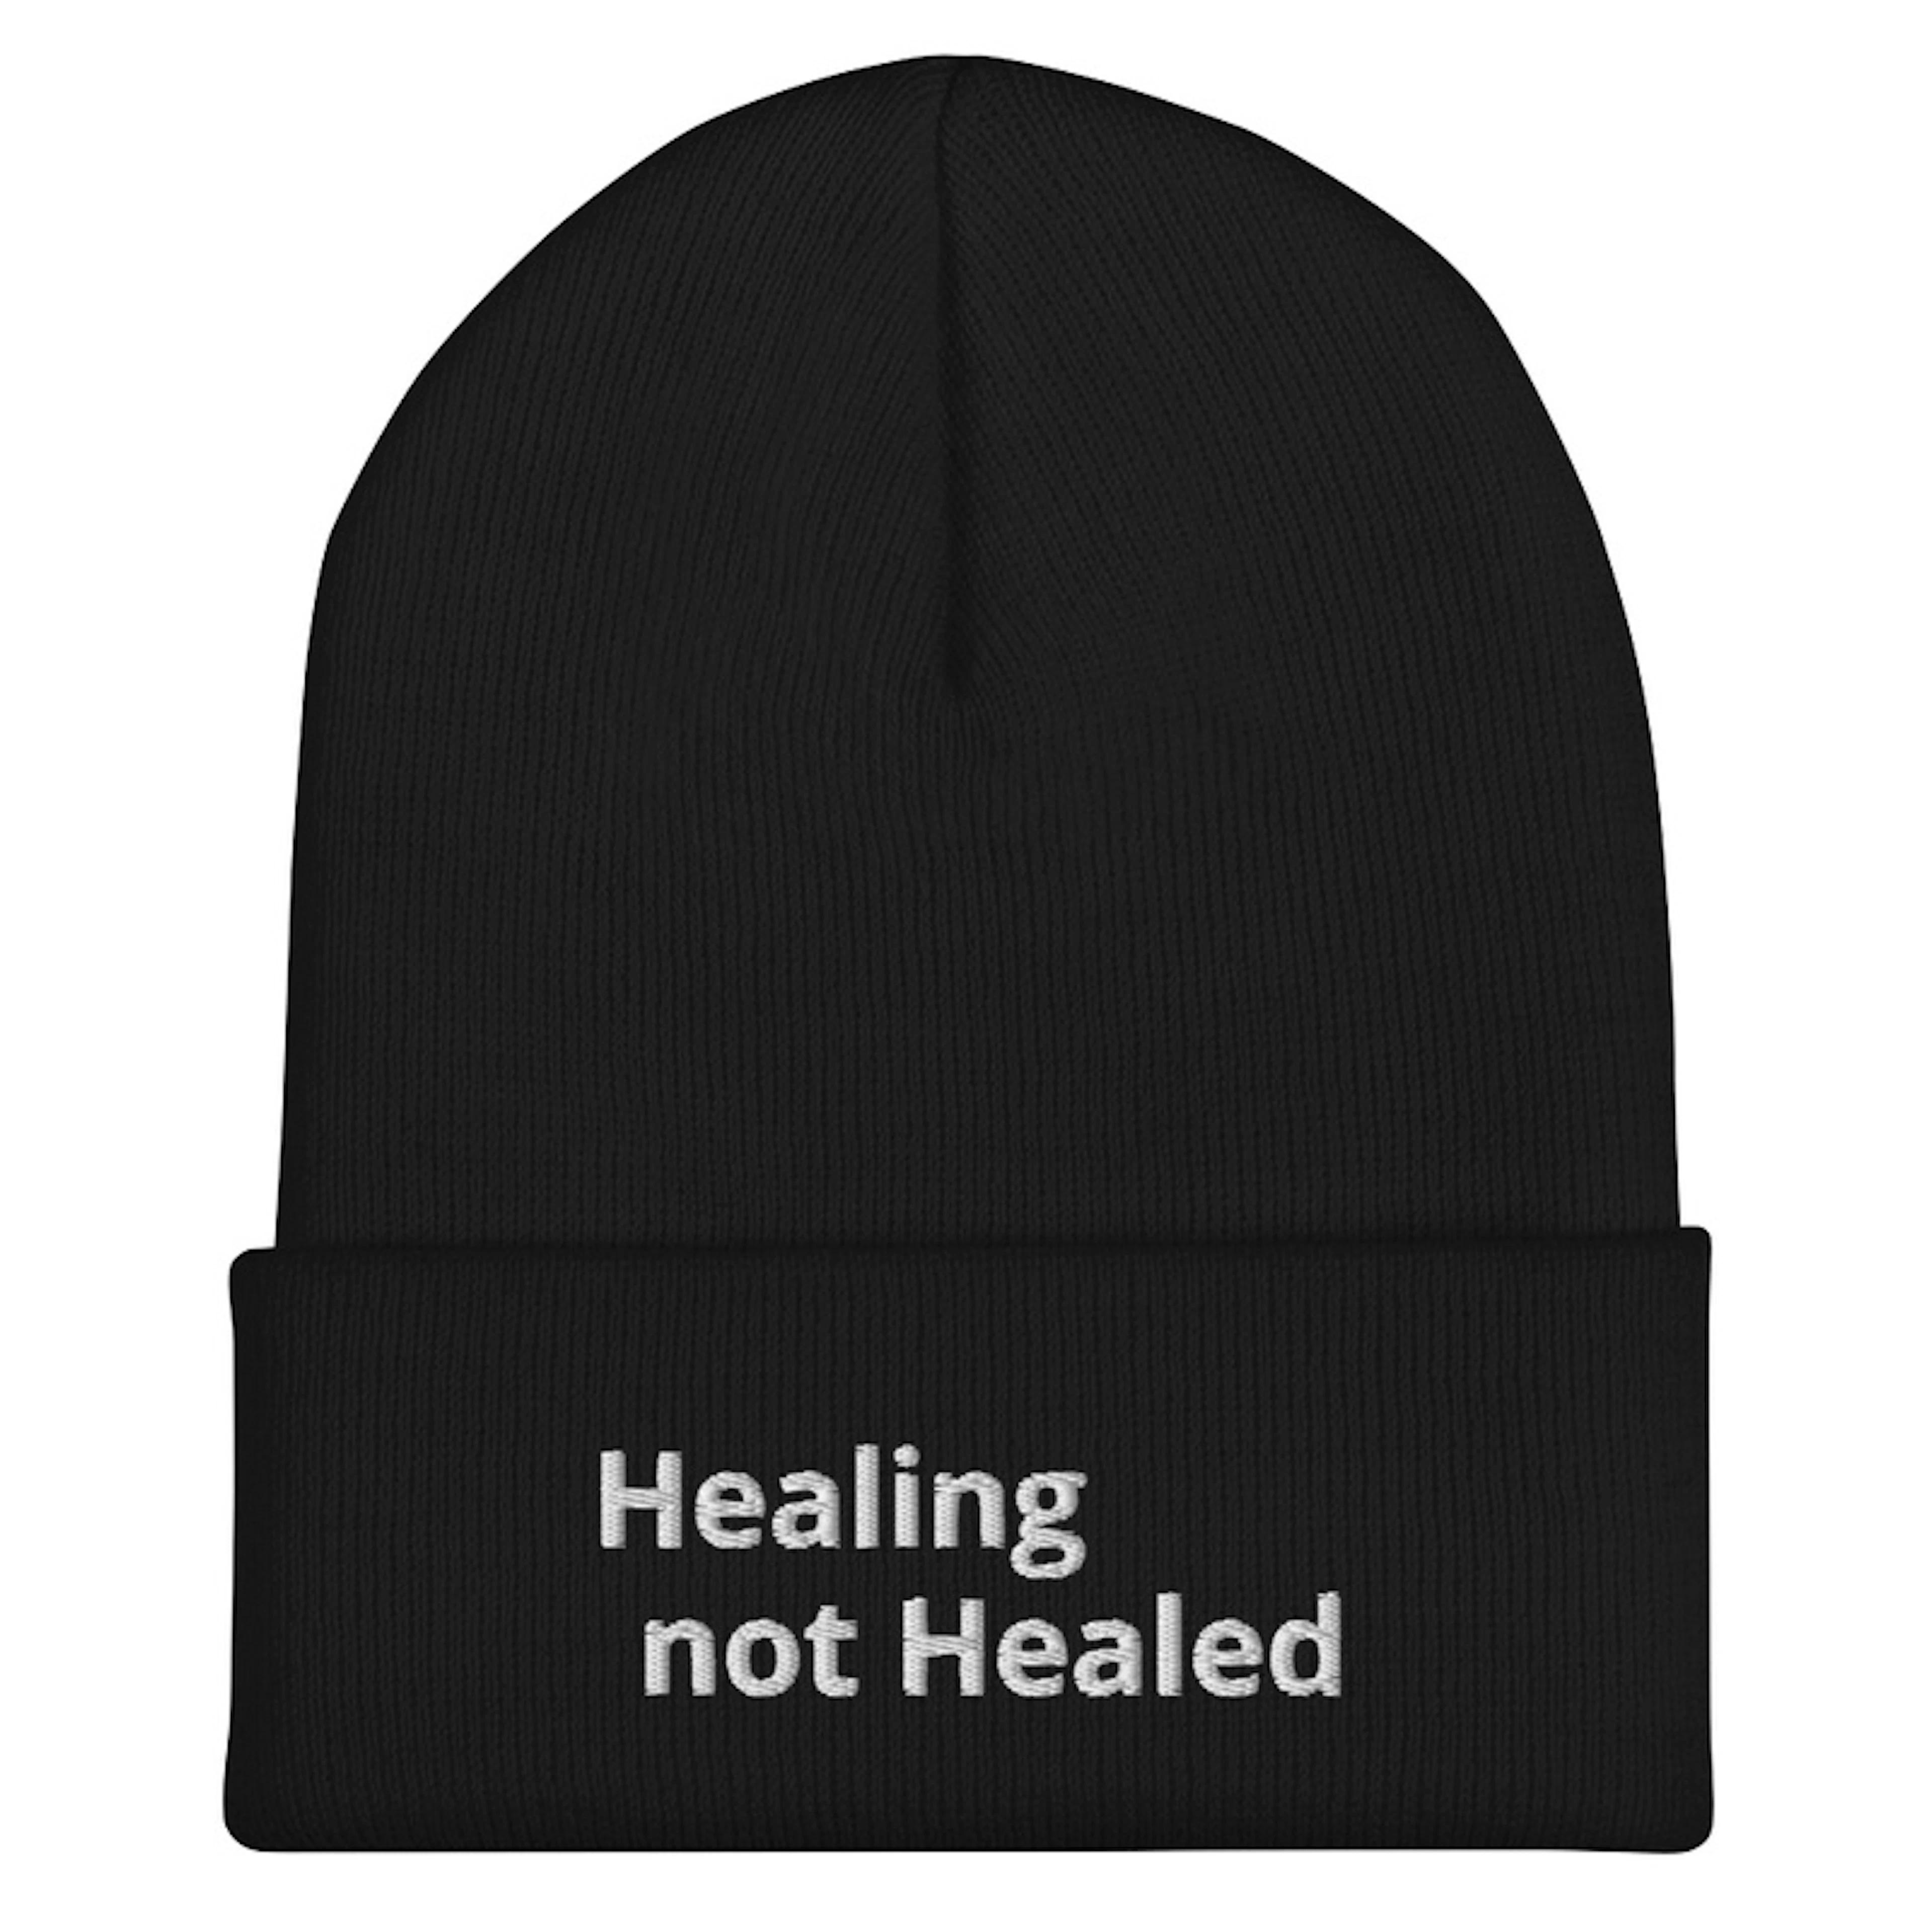 Healing not Healed Beanie